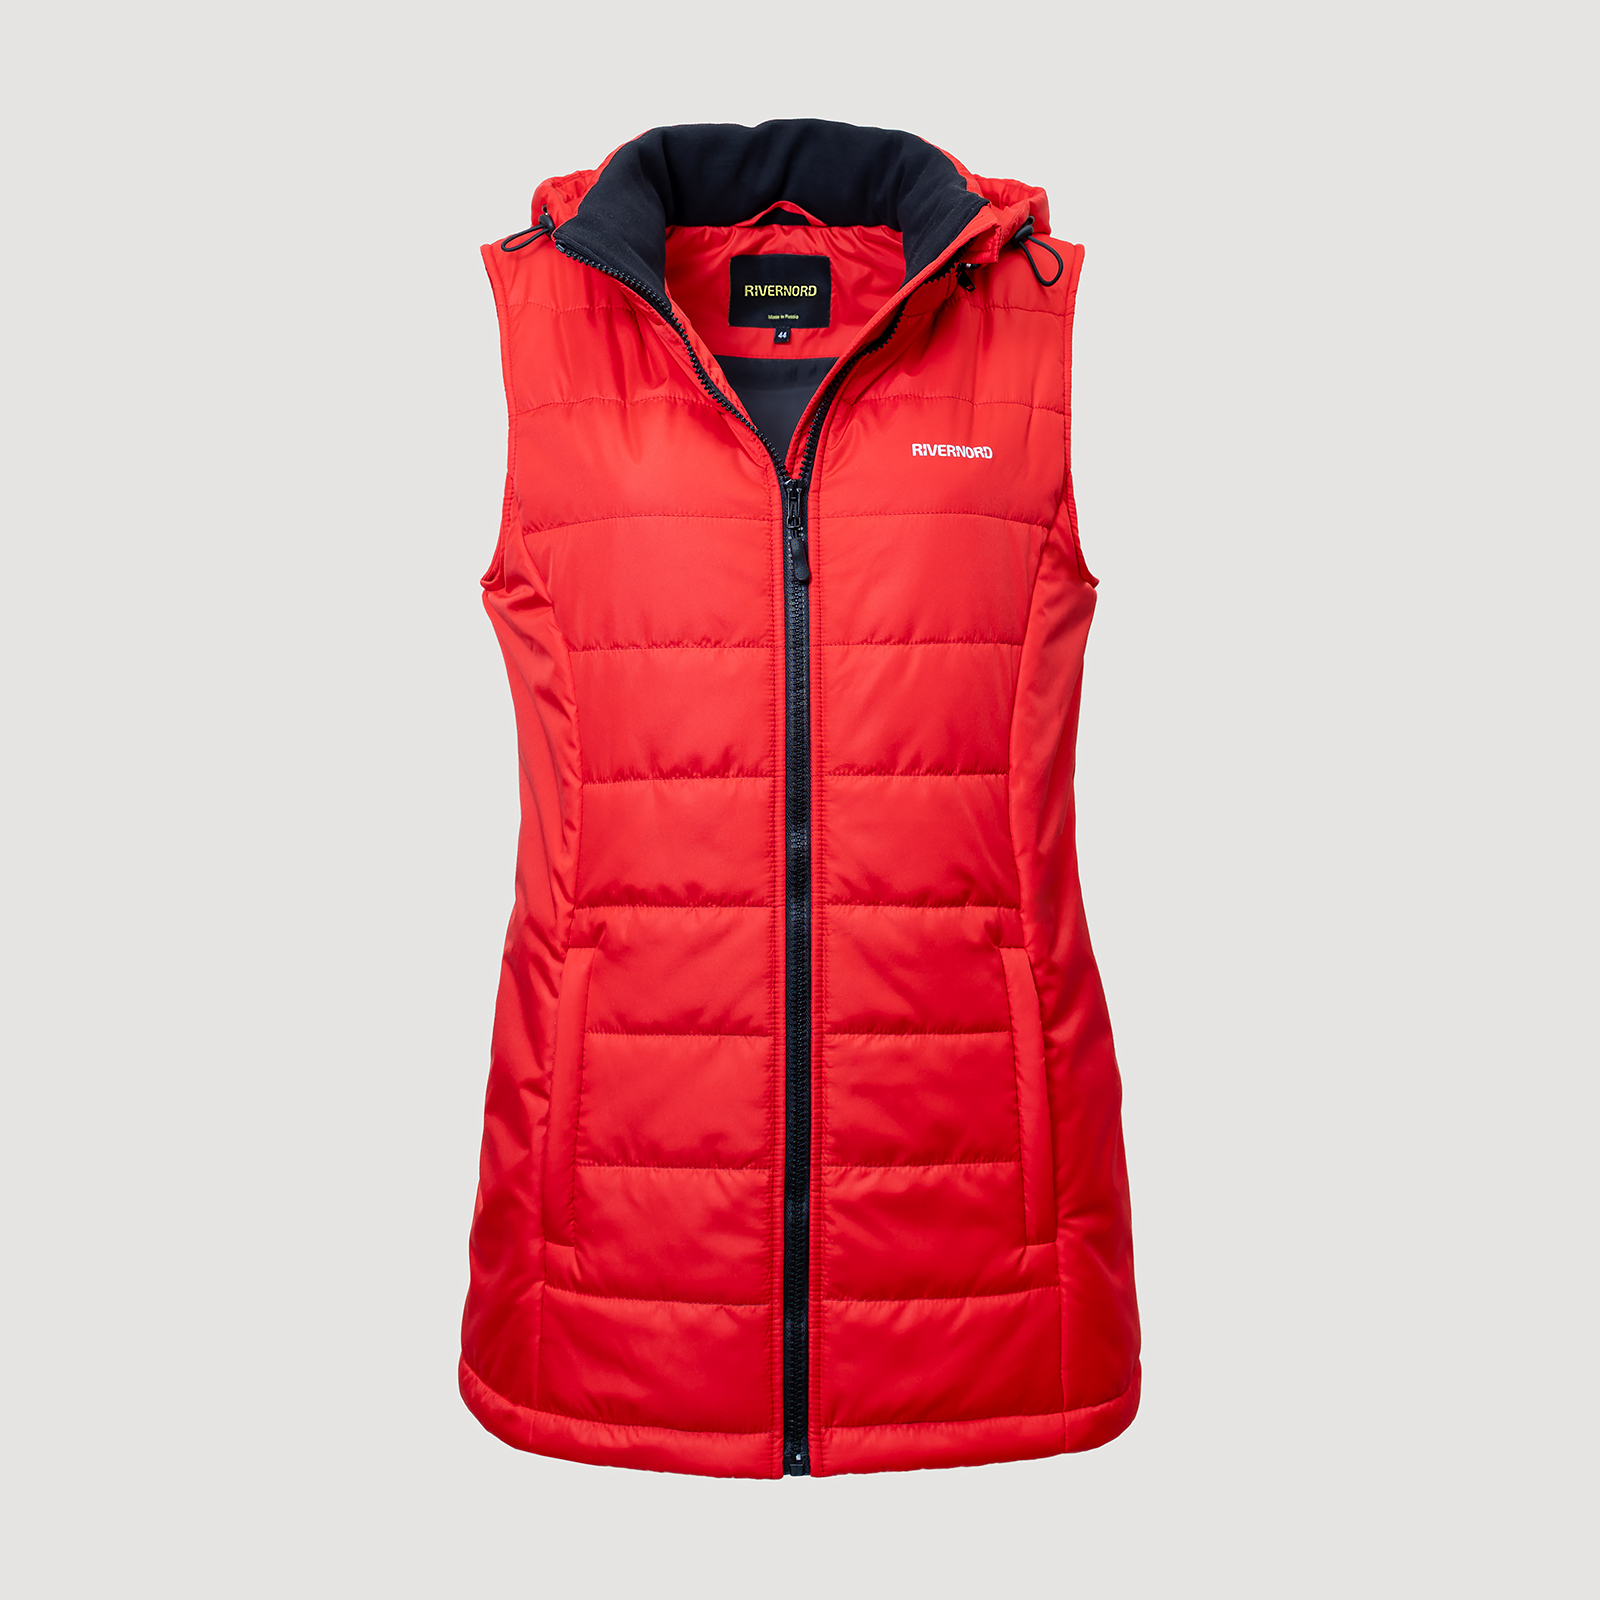 Женский жилет Elegance Winter Vest цвет красный